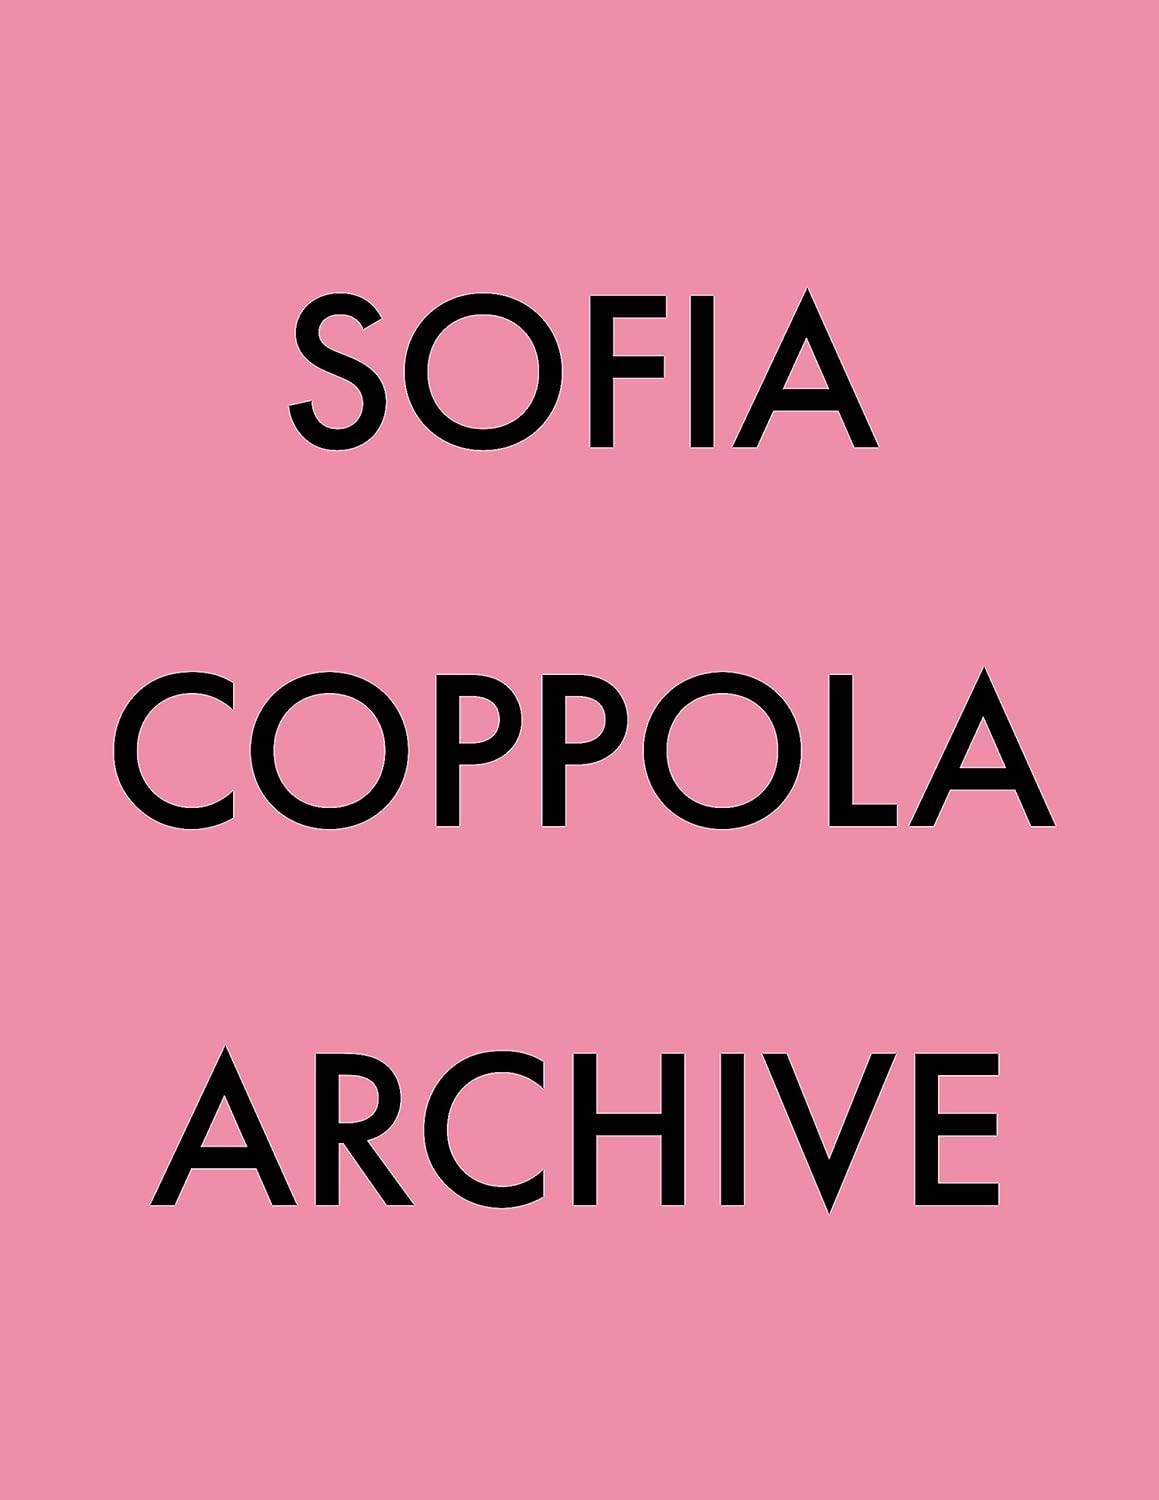 Sofia Coppola Shares Her Summer Essentials